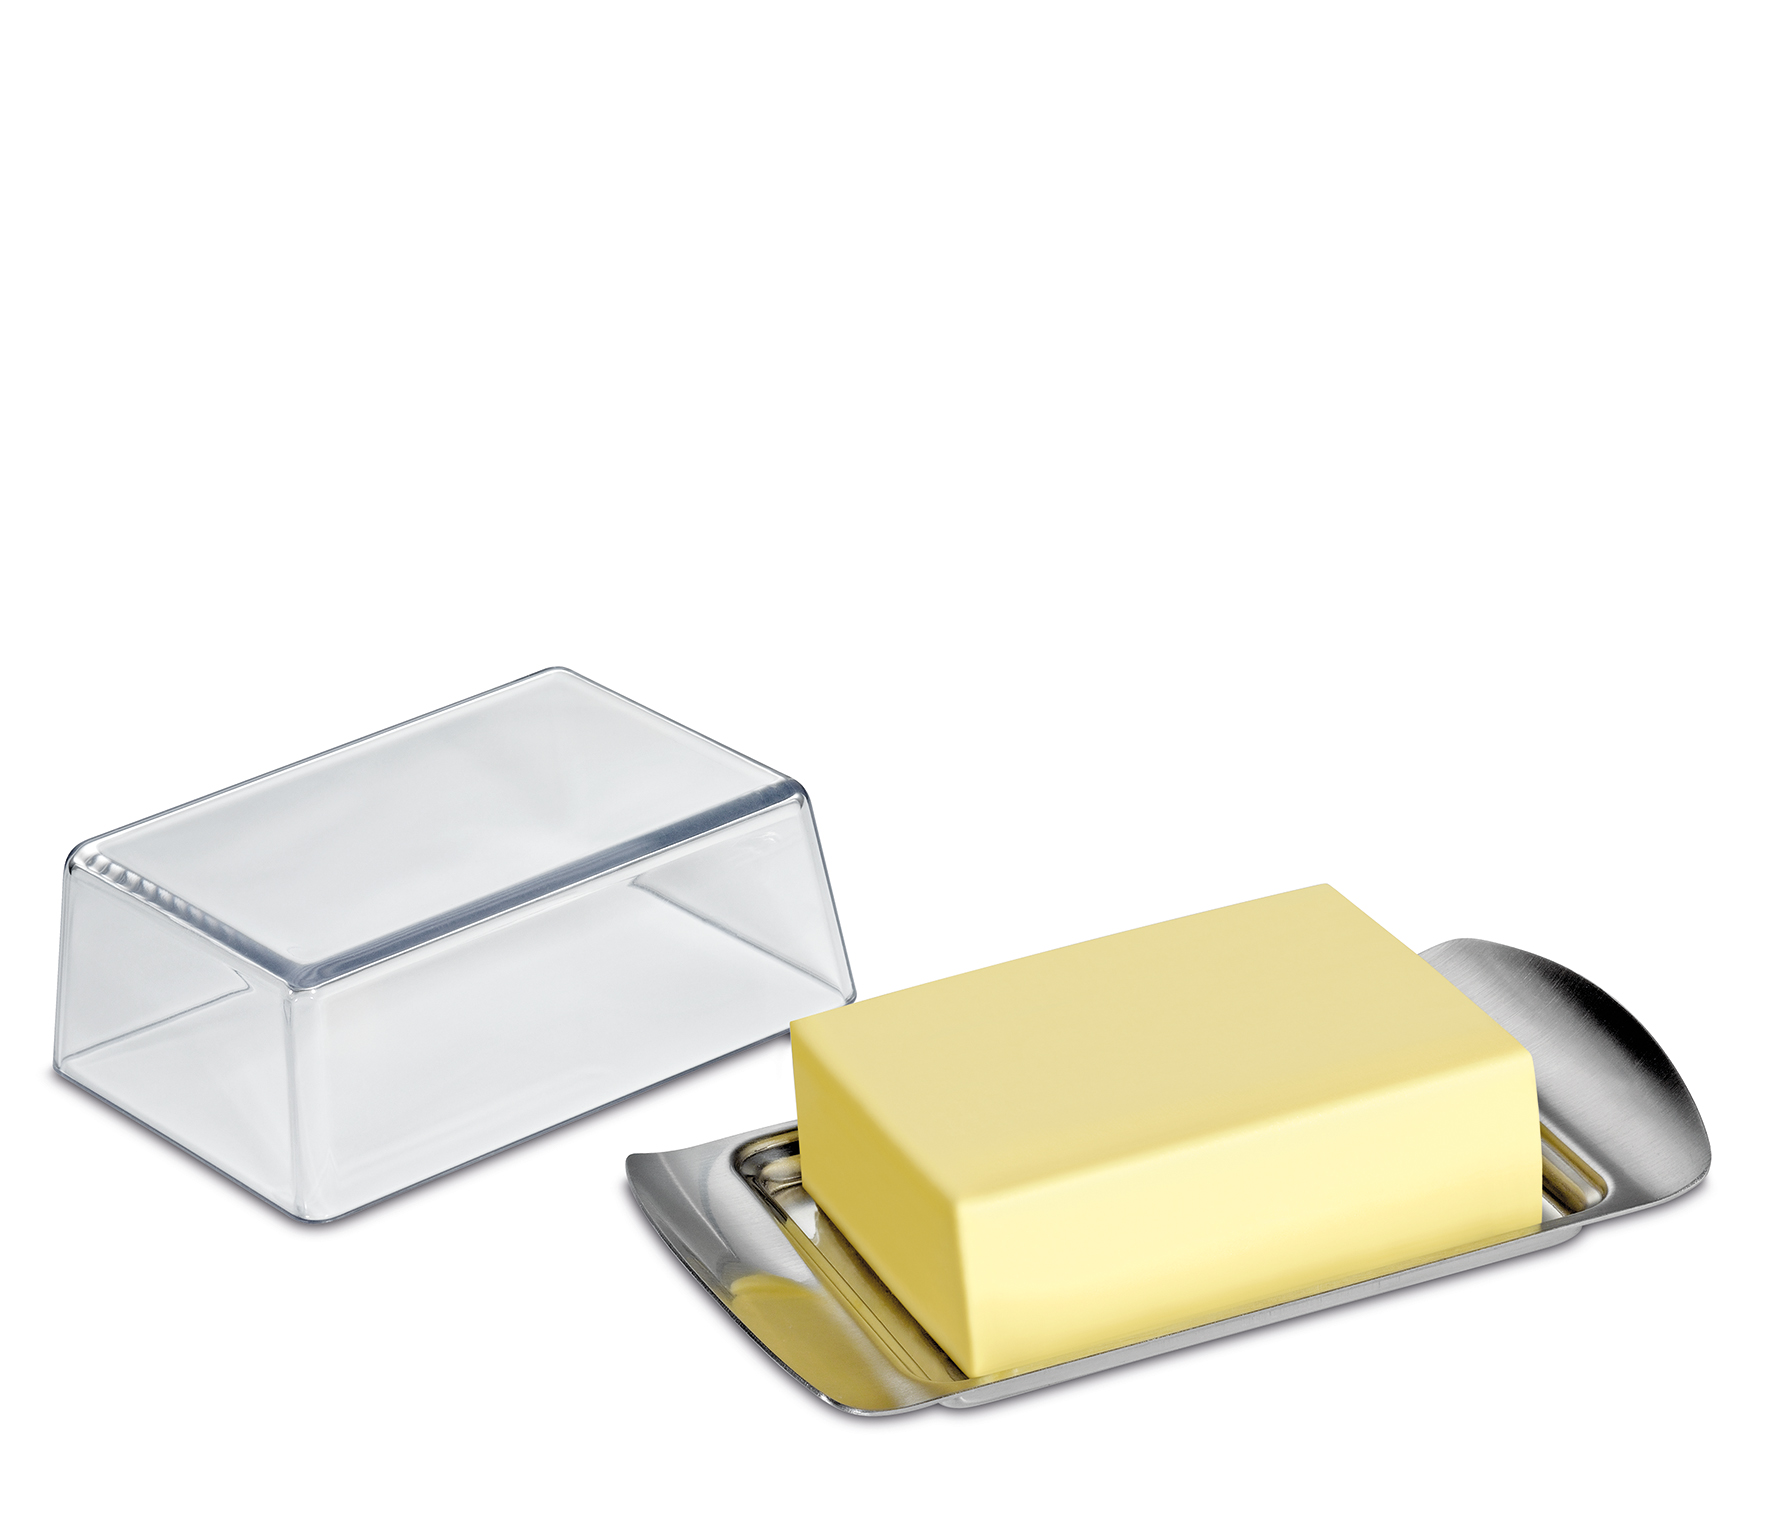 Butterdose COMPACT Für ½ Pfund Butter (250 g) Passend für das Butterfach im Kühlschrank 